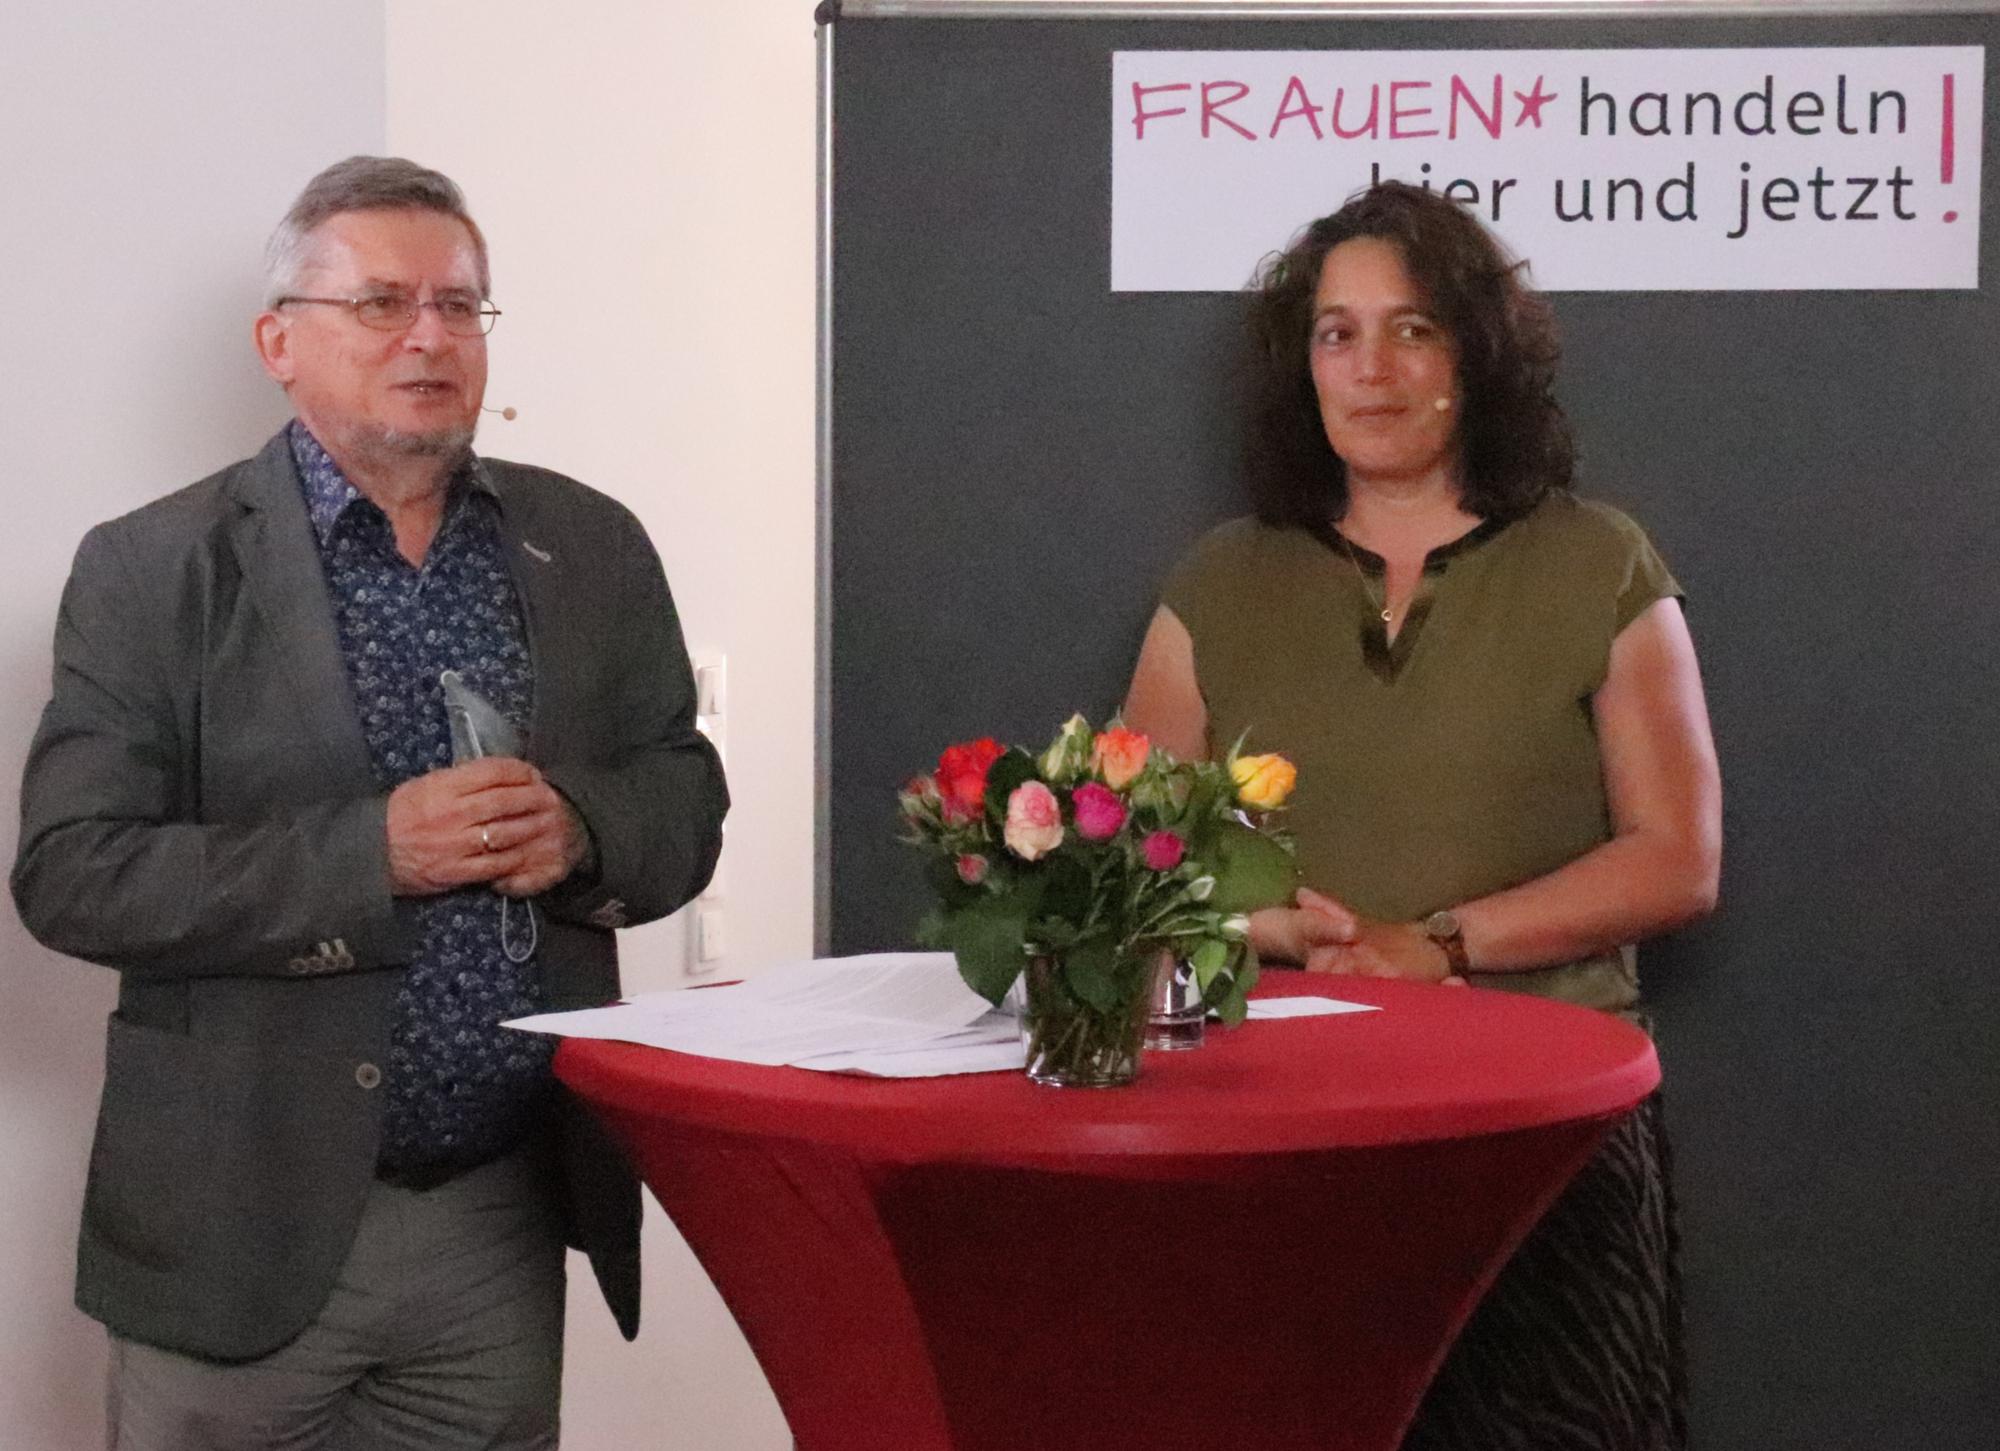 Hans Jürgen Dörr richtet ein Grußwort an die Frauenversammlung (c) Bistum Mainz / Hoffmann